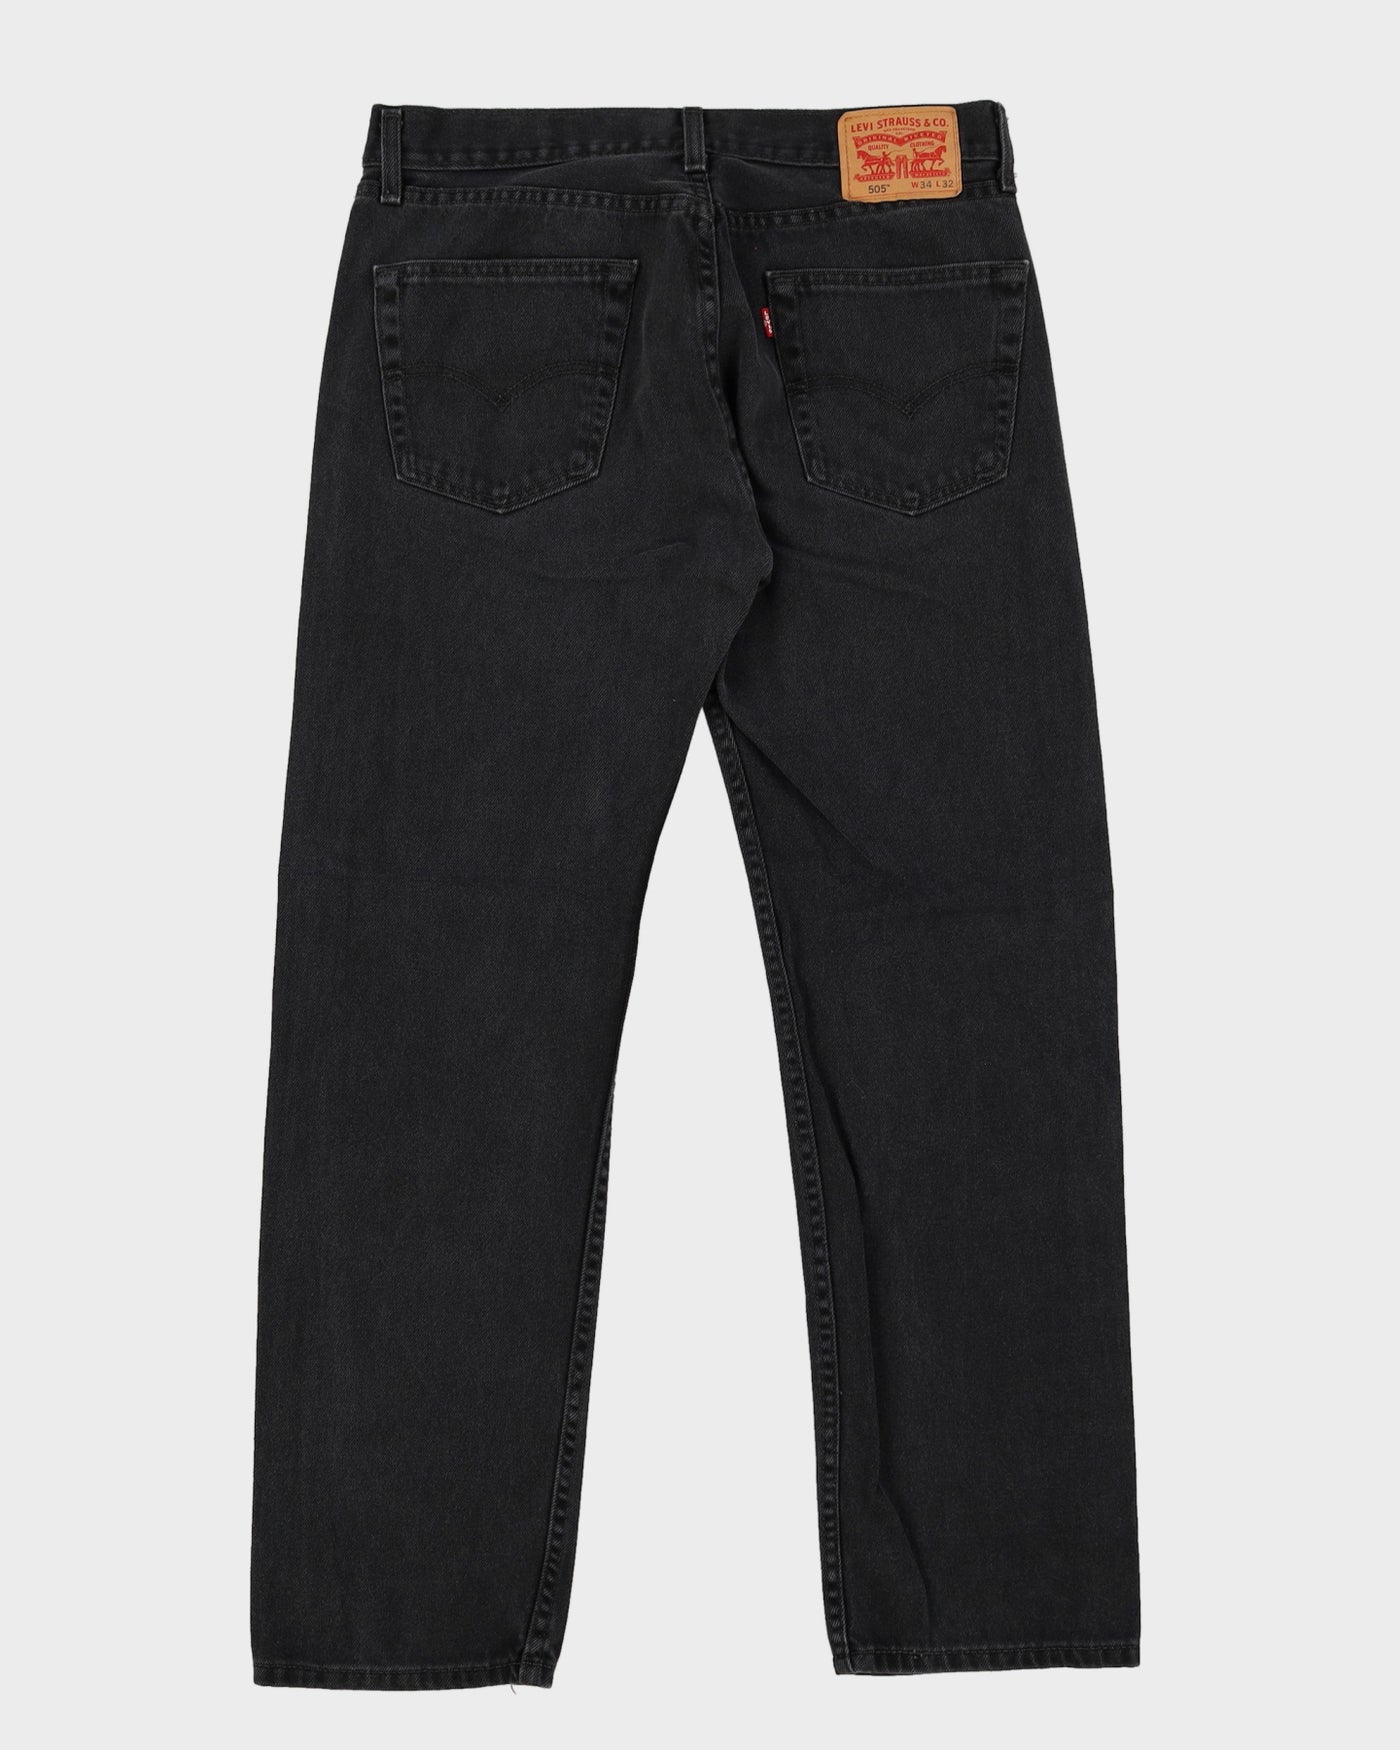 Levi's 505 Black Dark Wash Jeans - W34 L31